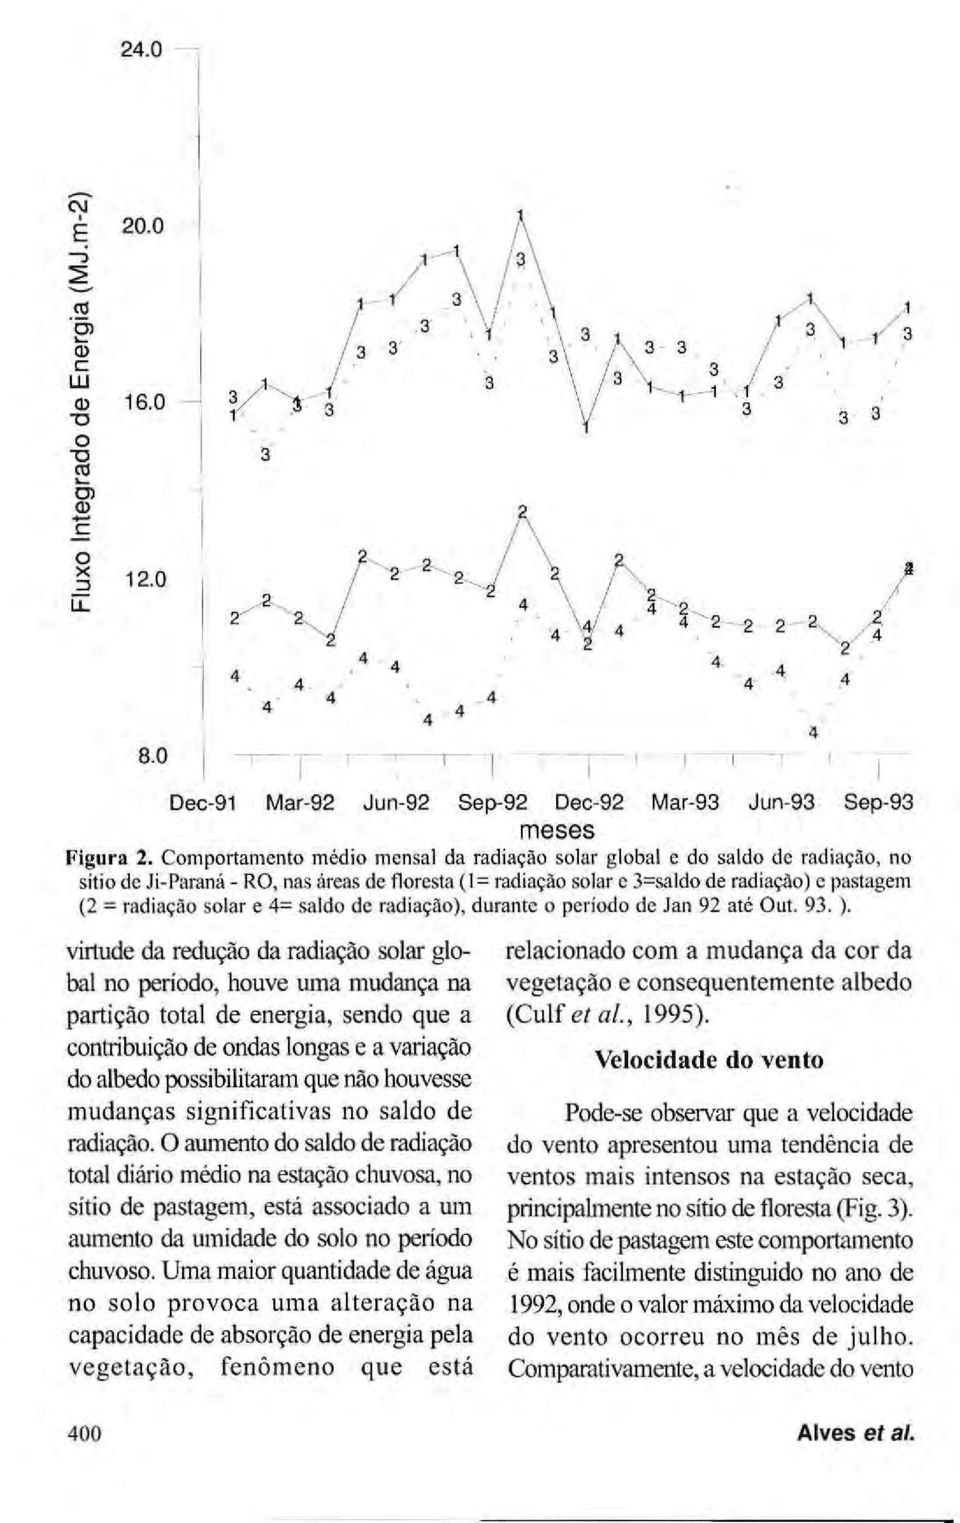 Comportamento médio mensal da radiação solar global e do saldo de radiação, no sítio de Ji-Paraná - RO, nas áreas de floresta (1= radiação solar c 3=saldo de radiação) c pastagem (2 = radiação solar